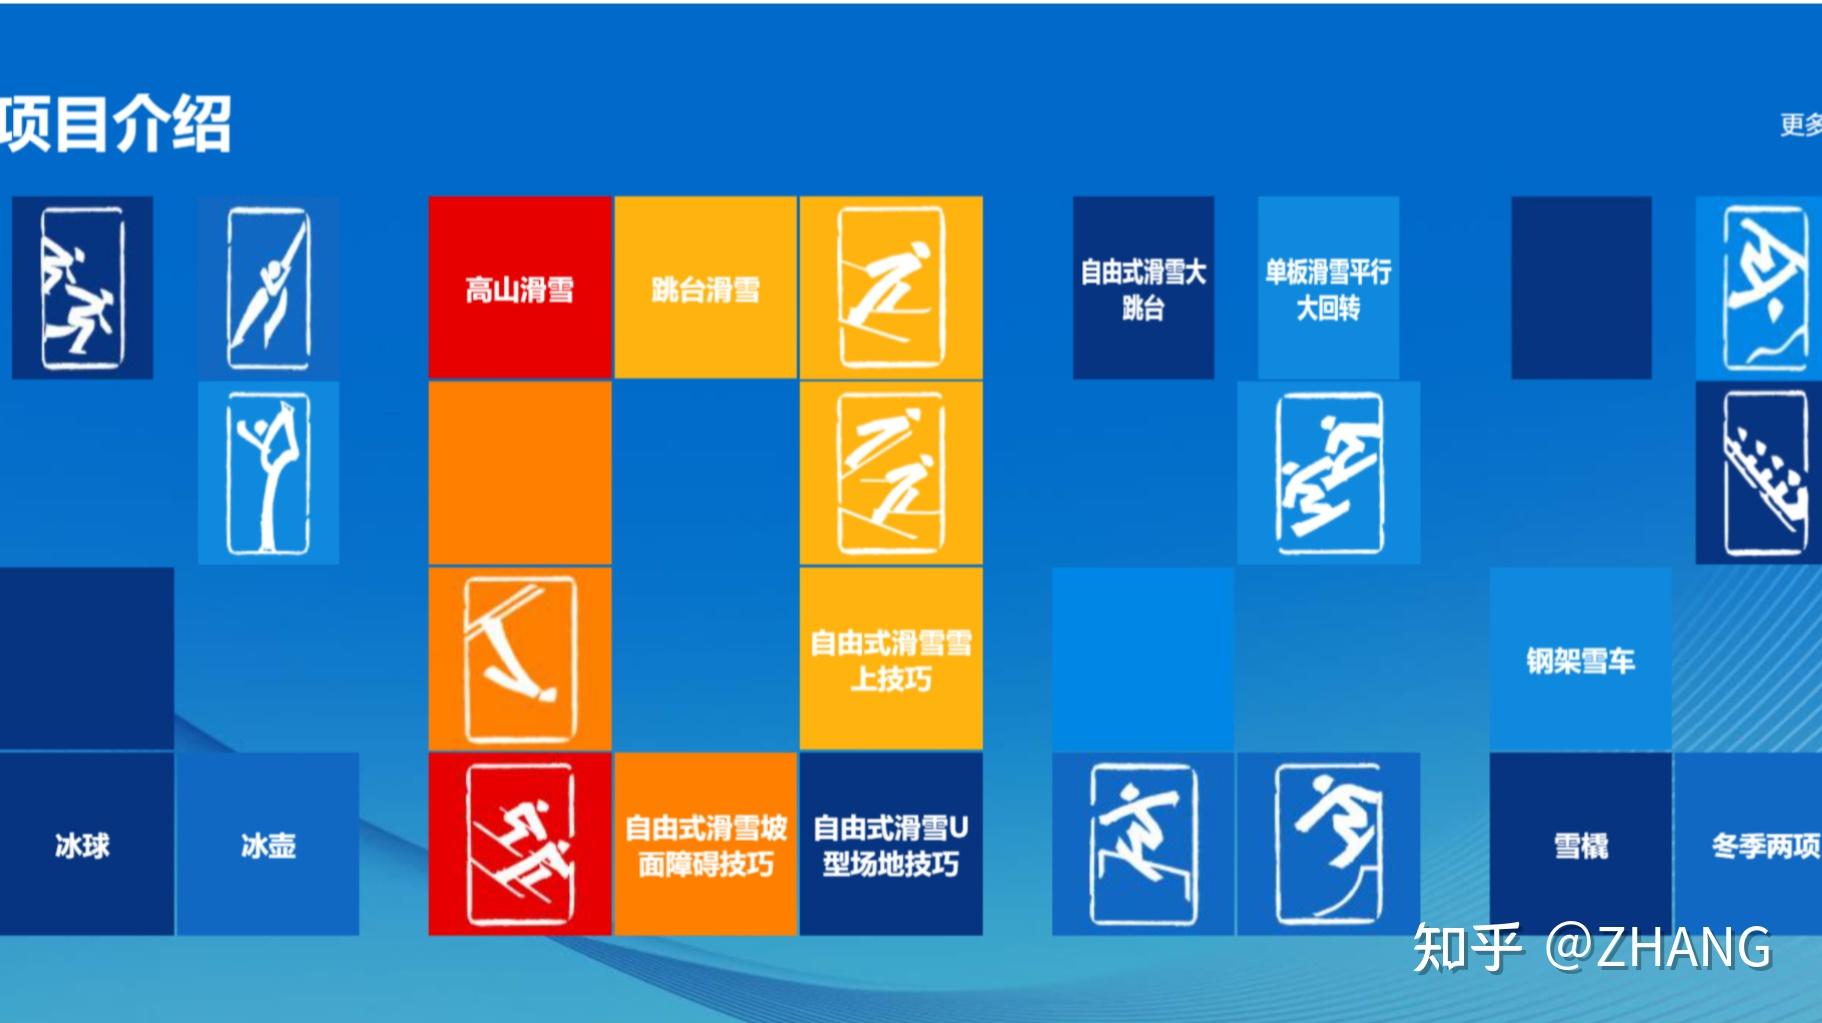 冬奥项目内容展板图片